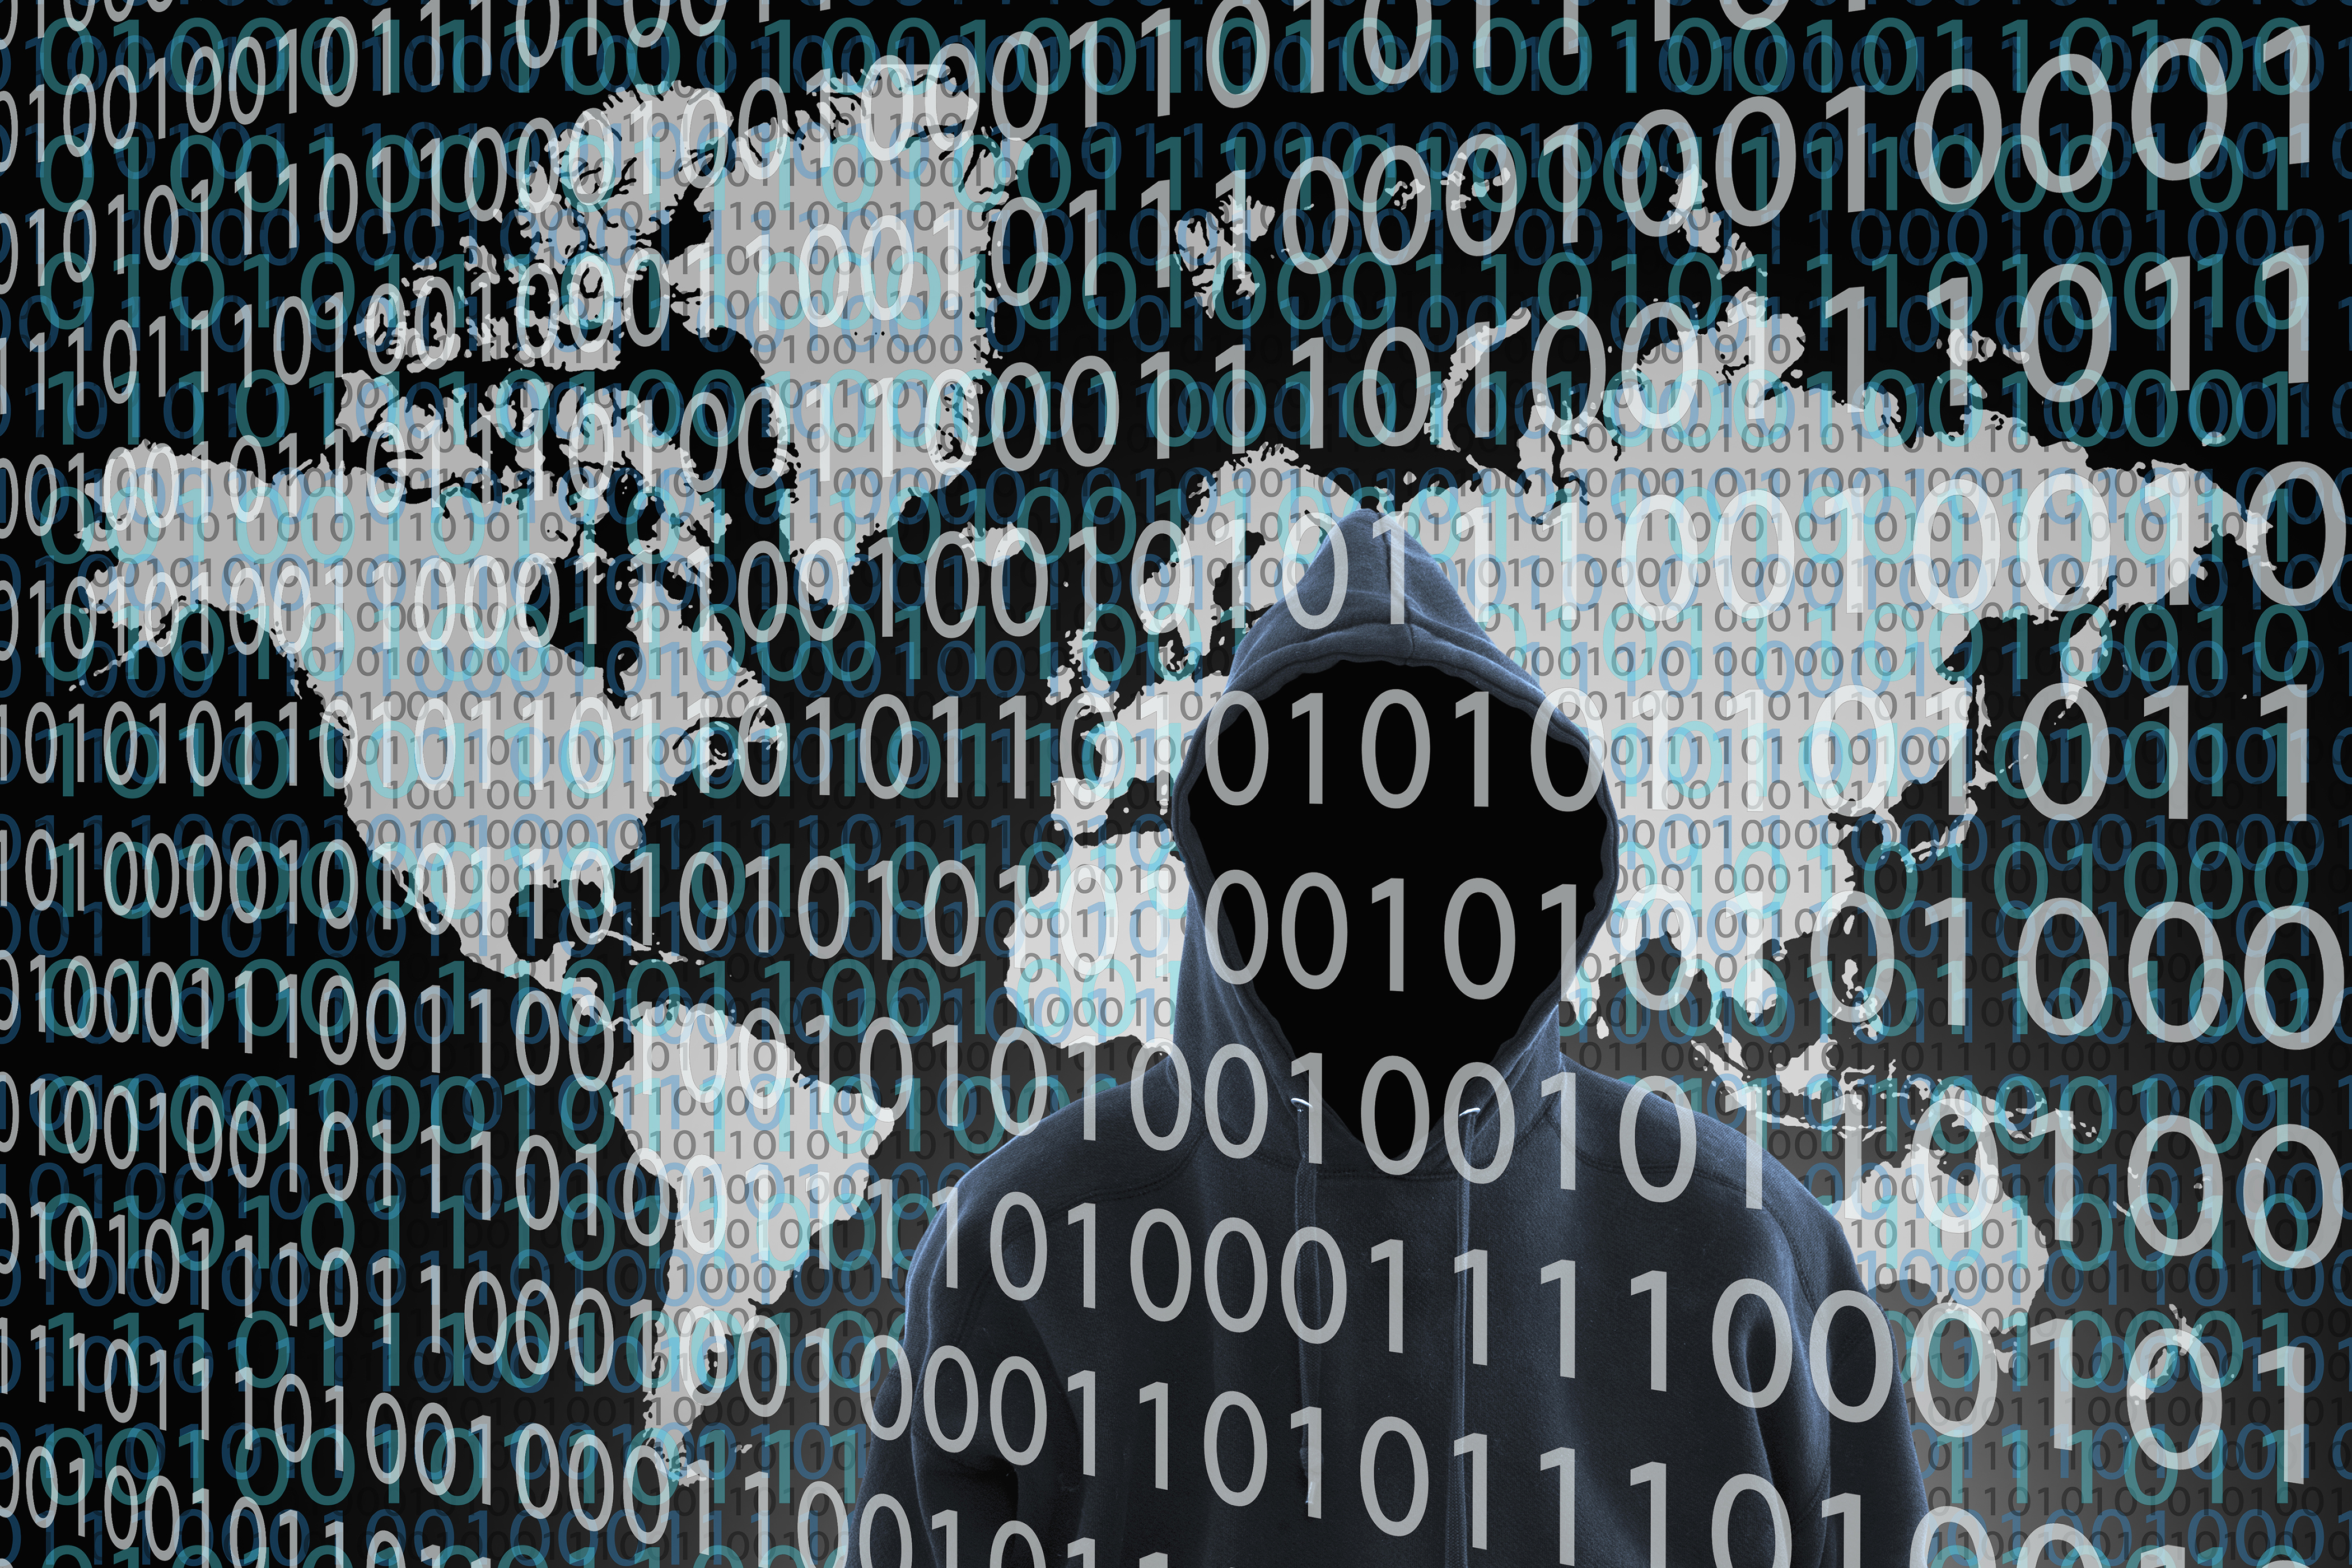 Hacker wearing hoody standing behind binary code. (Getty Images)